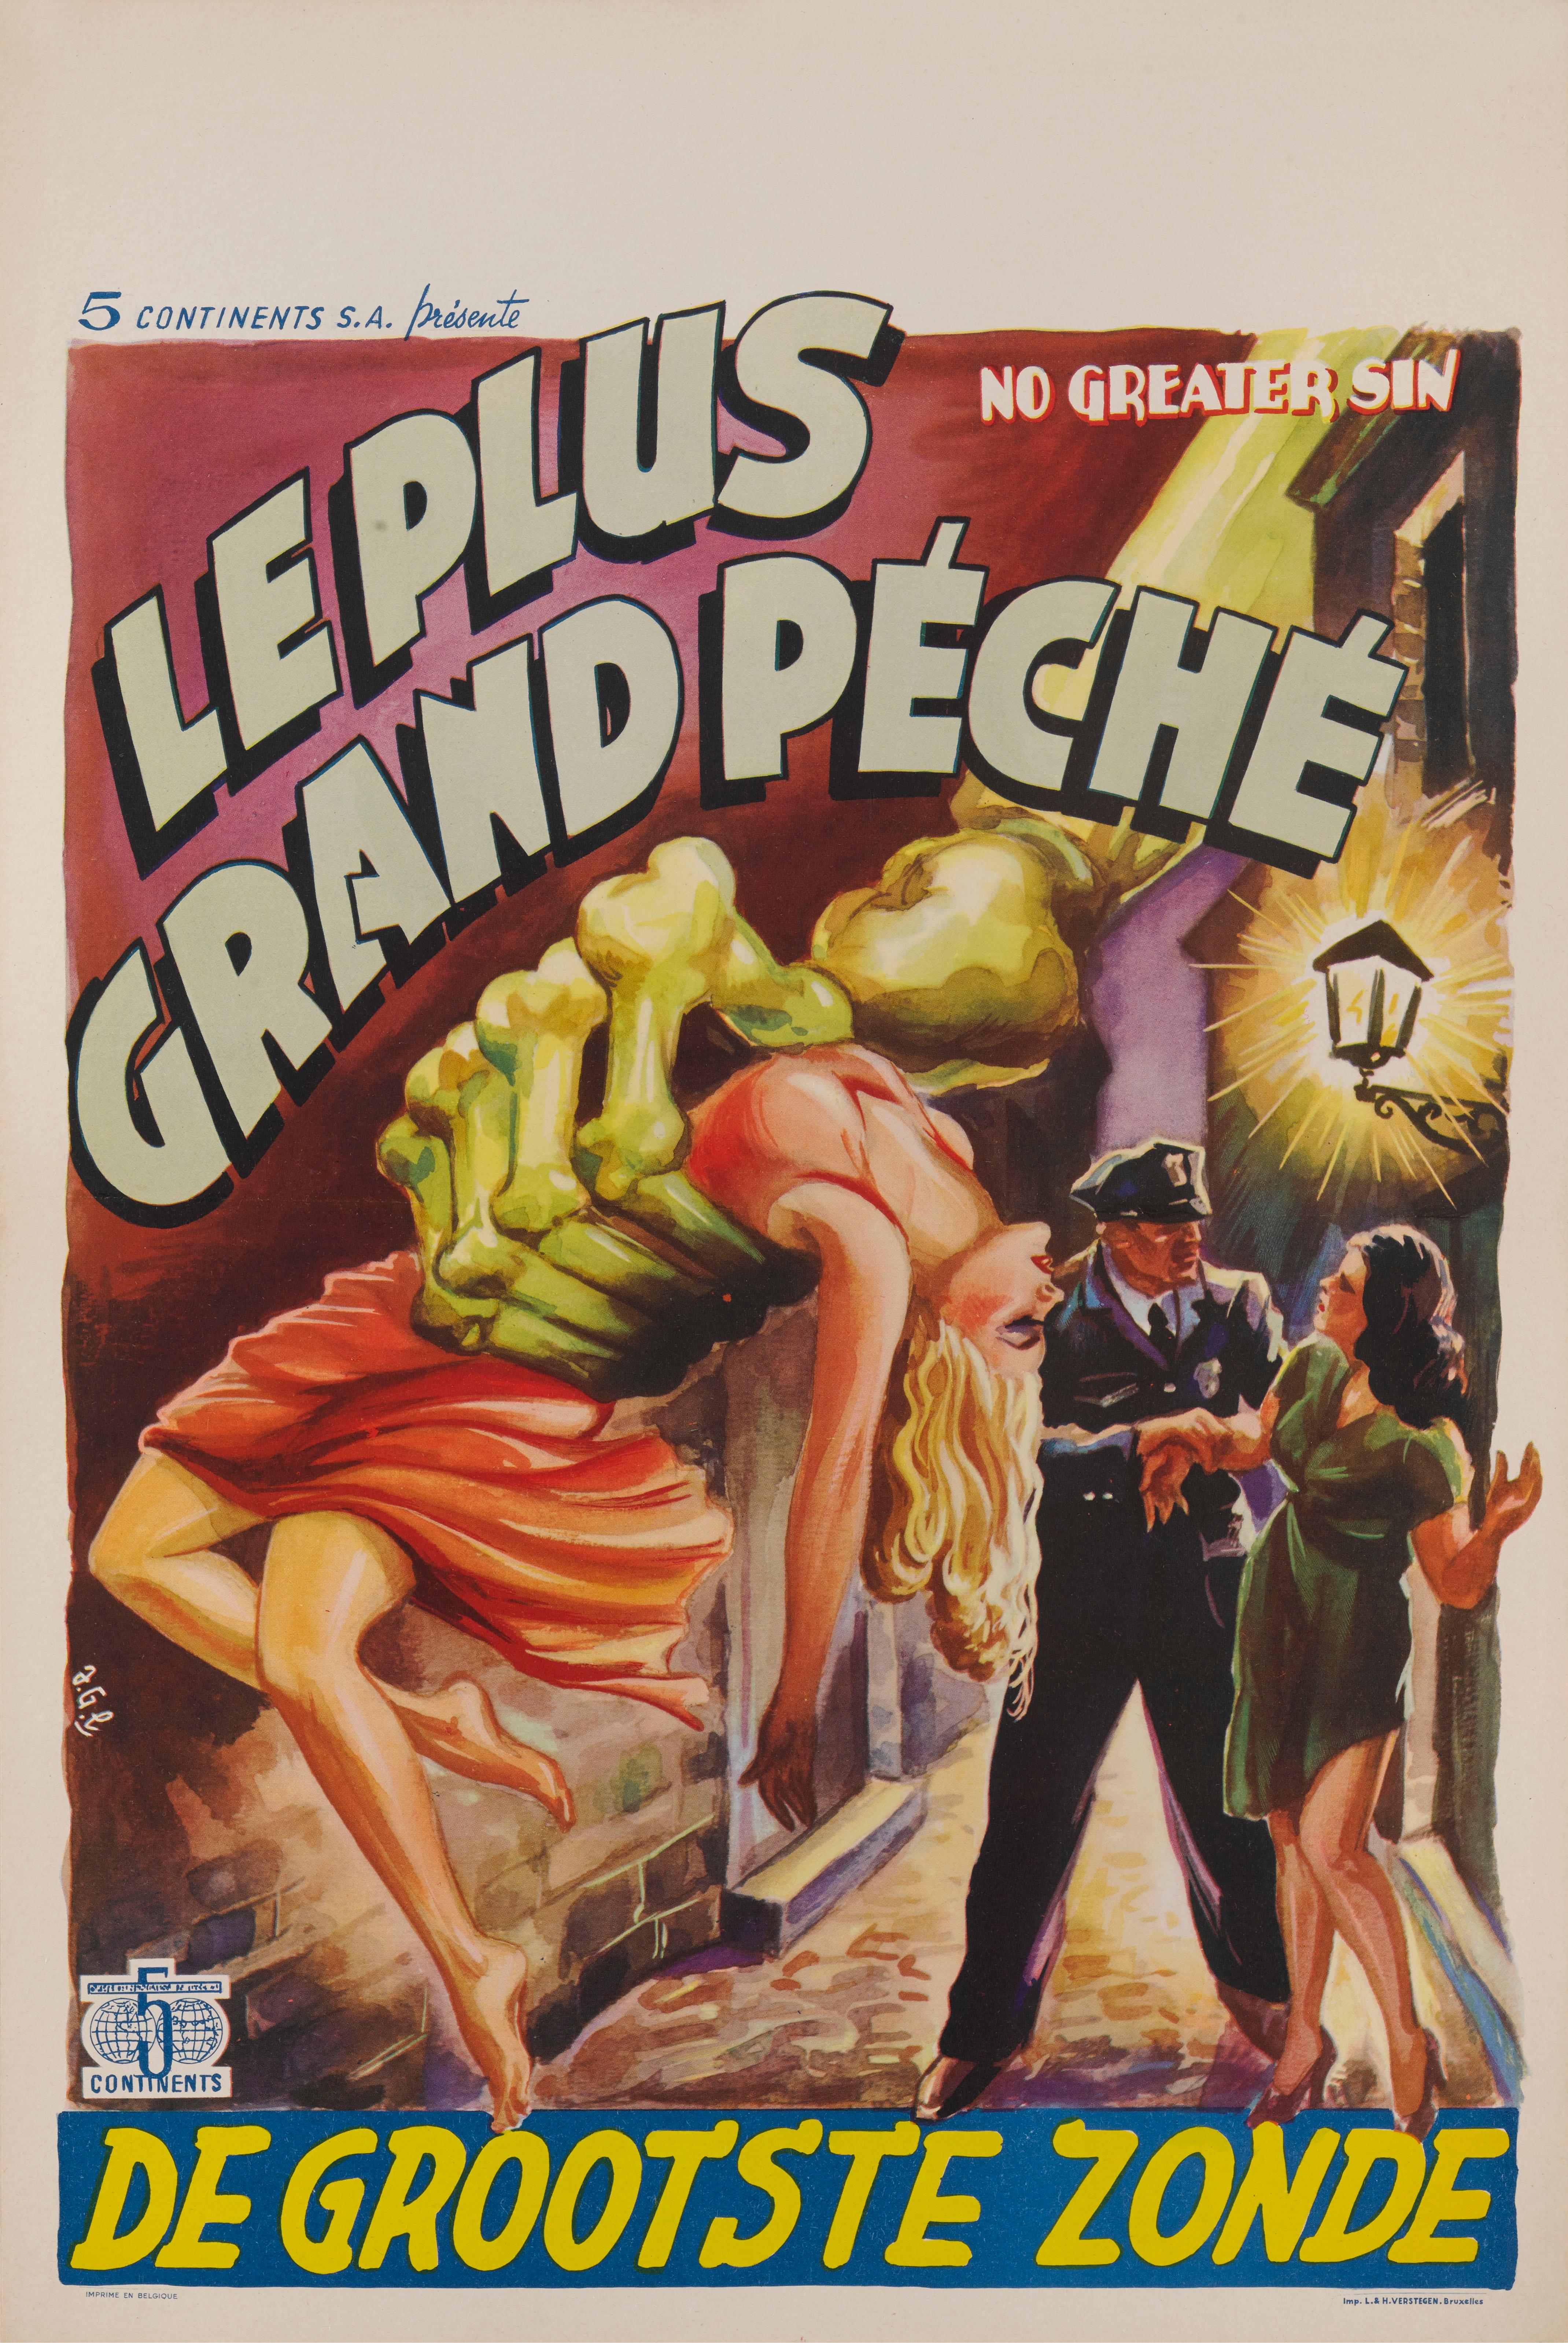 Original belgisches Filmplakat für den Exploitation-Film von 1941 unter der Regie von William High und mit Leon Ames und Launa Walters in den Hauptrollen.
Der Film kam in Belgien erst nach dem Zweiten Weltkrieg in die Kinos, und dieses Plakat